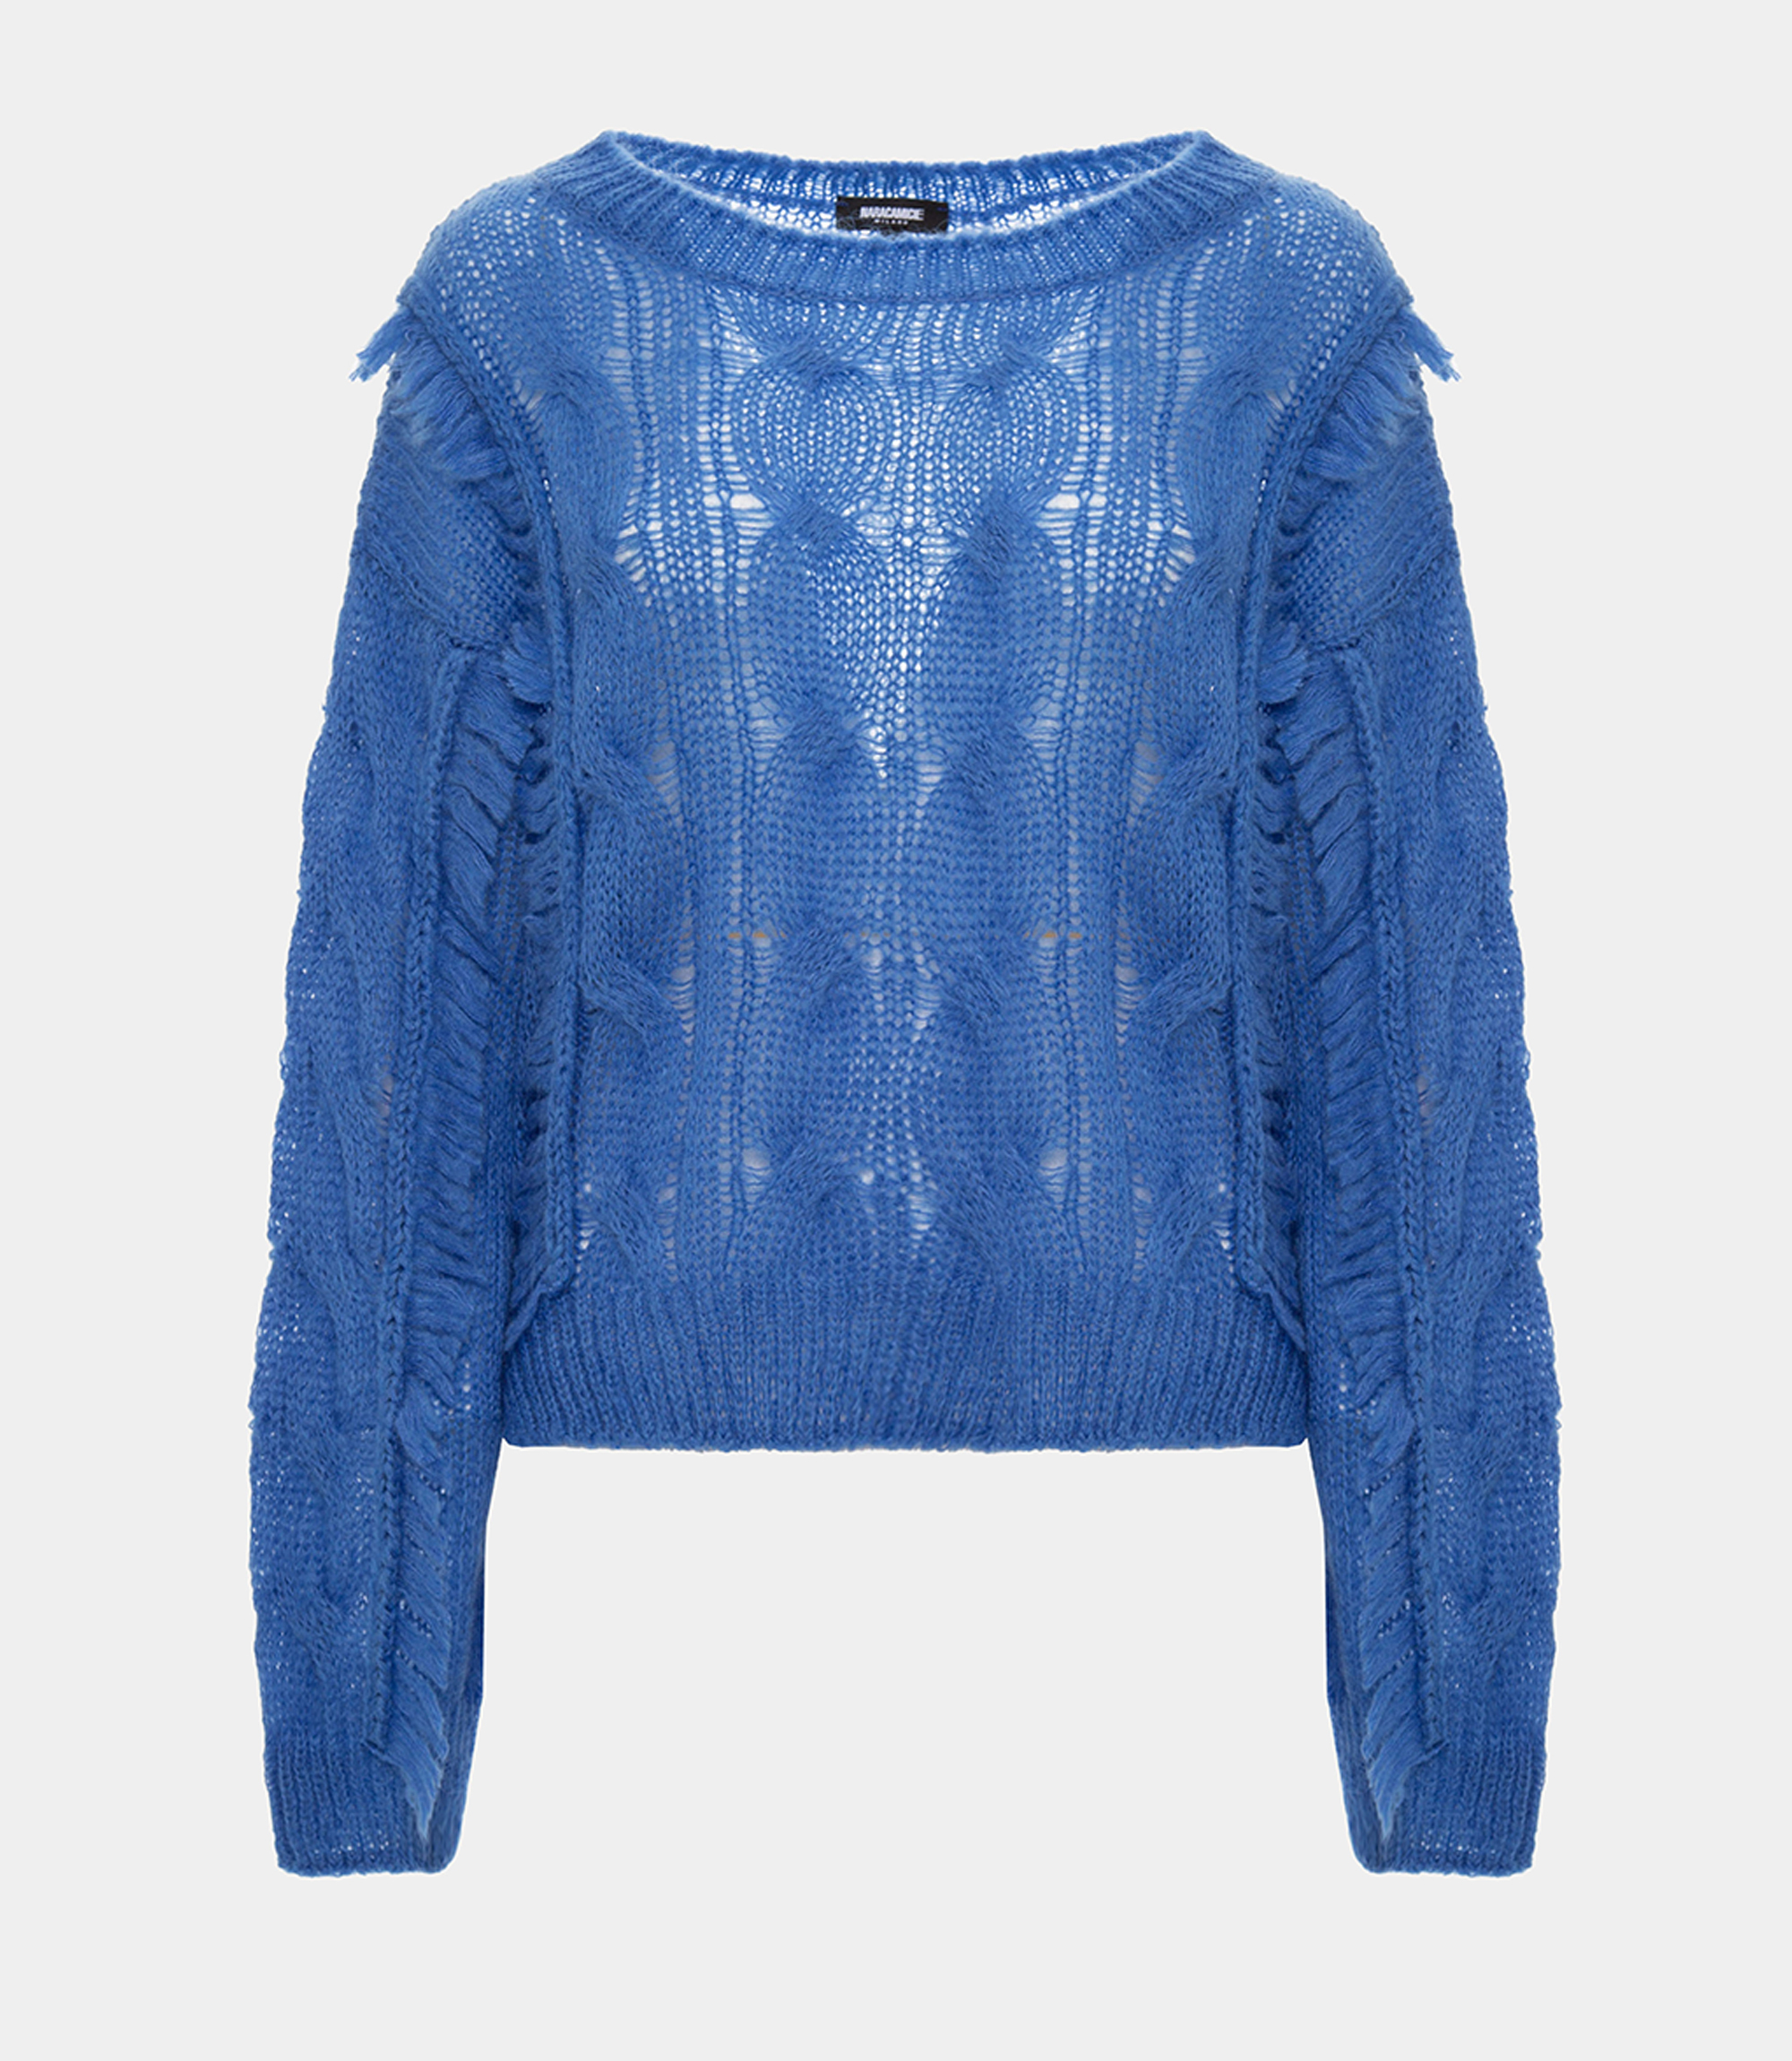 Fringe sweater - Blue - Nara Milano